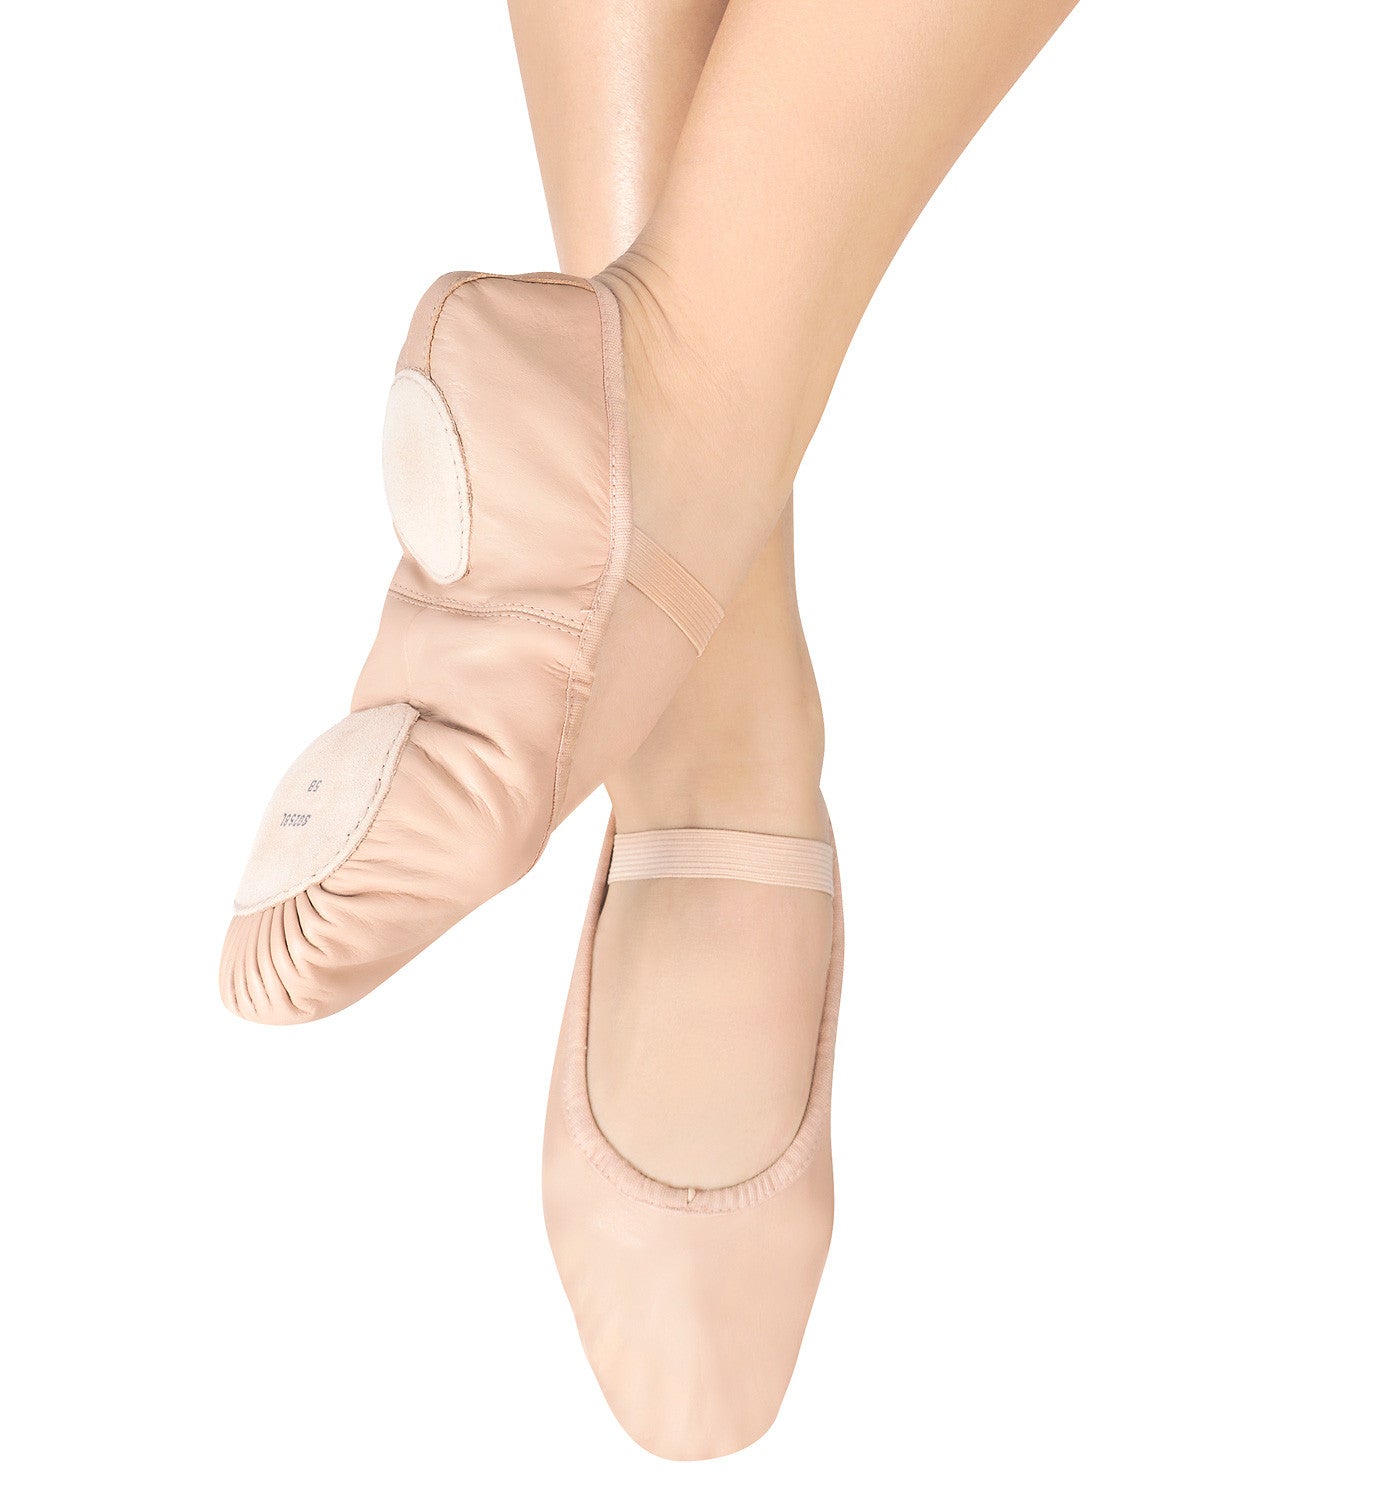 Bloch Adult "Dansoft" Leather Split-Sole Ballet Slippers for Women